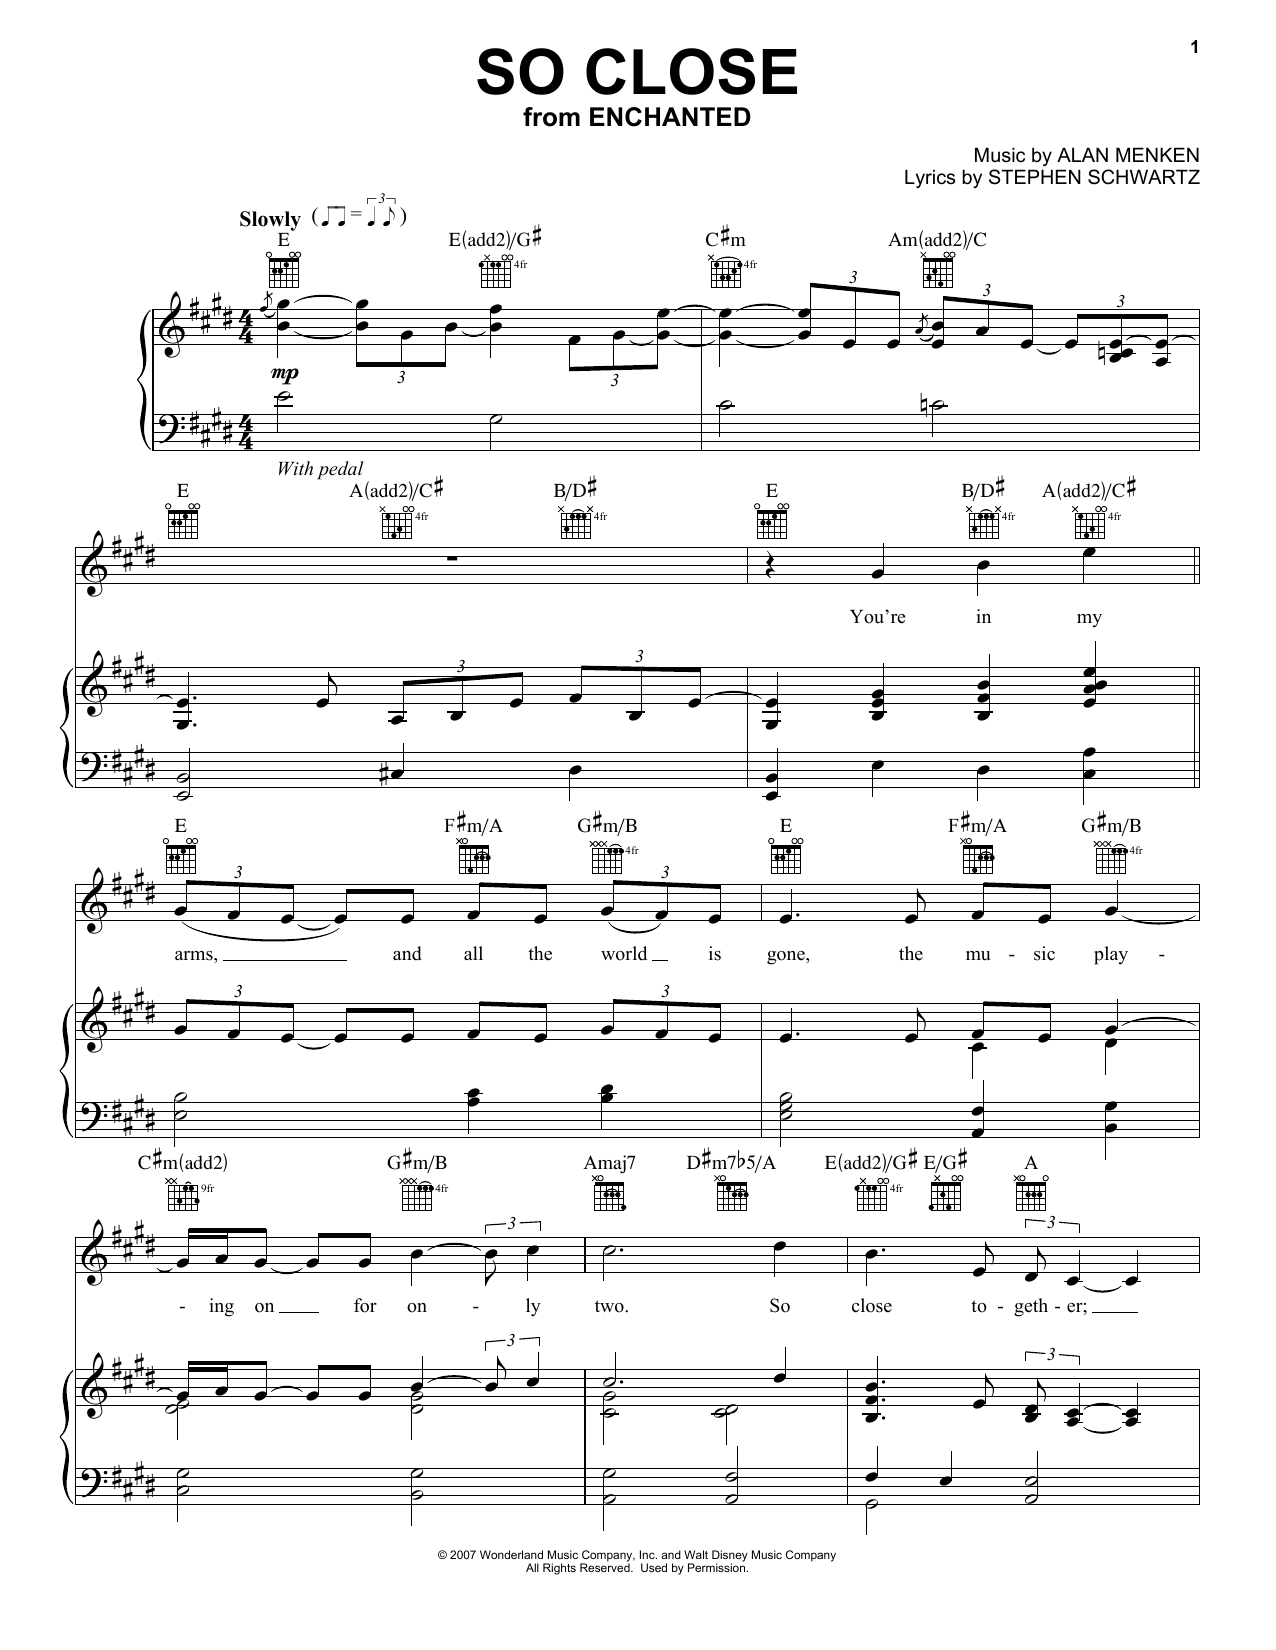 Alan Menken So Close Sheet Music Notes & Chords for Clarinet - Download or Print PDF